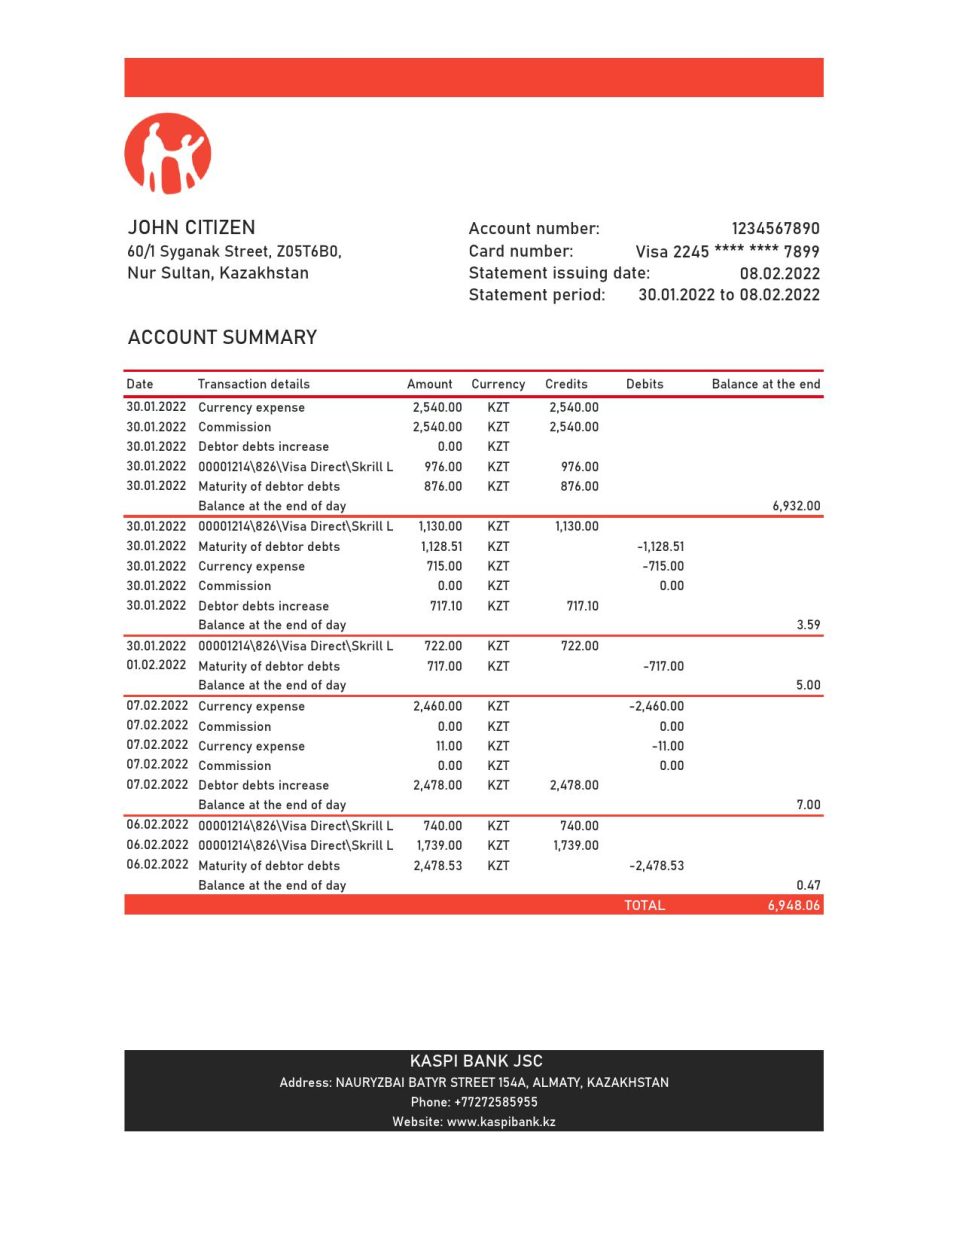 Kazakhstan Kaspi bank statement Excel and PDF template